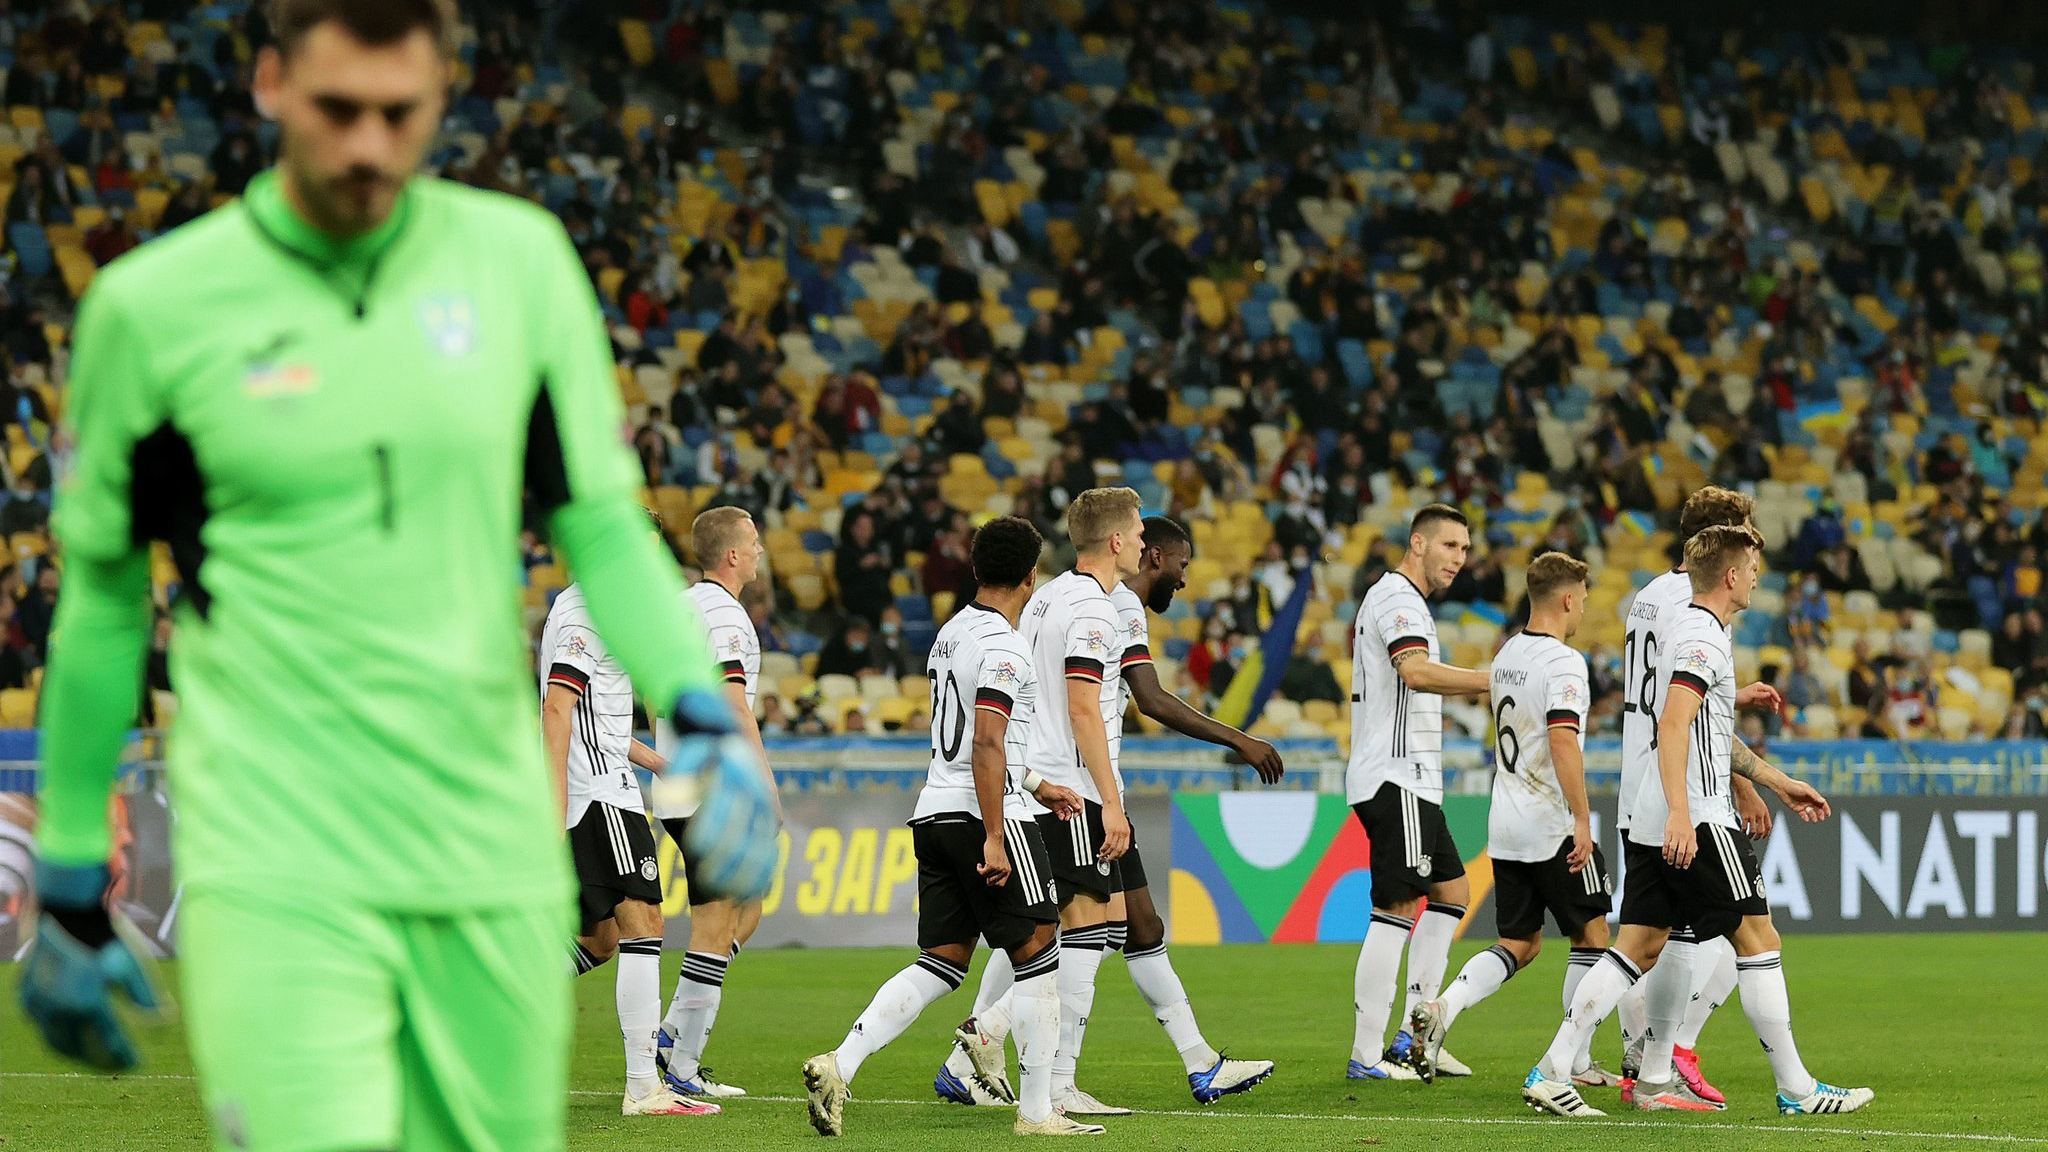 Ліга націй: Німеччина – Україна – де дивитися онлайн матч 14.11.2020